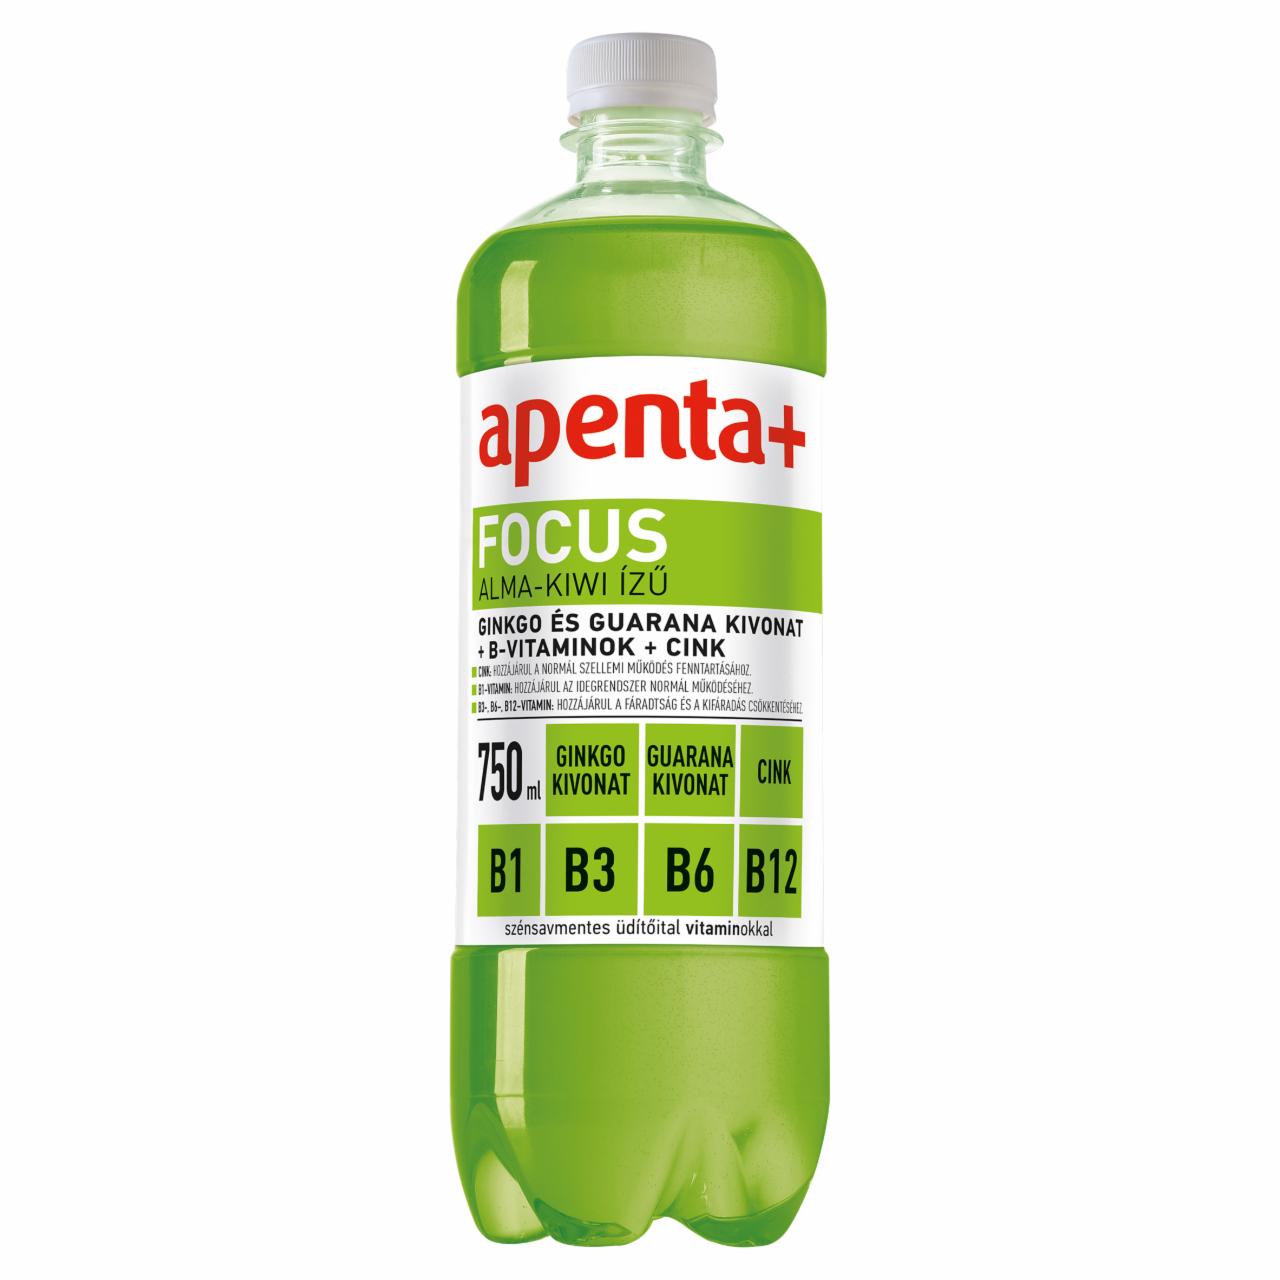 Képek - Apenta+ Focus alma-kiwi ízű szénsavmentes energiaszegény üdítőital vitaminokkal 750 ml